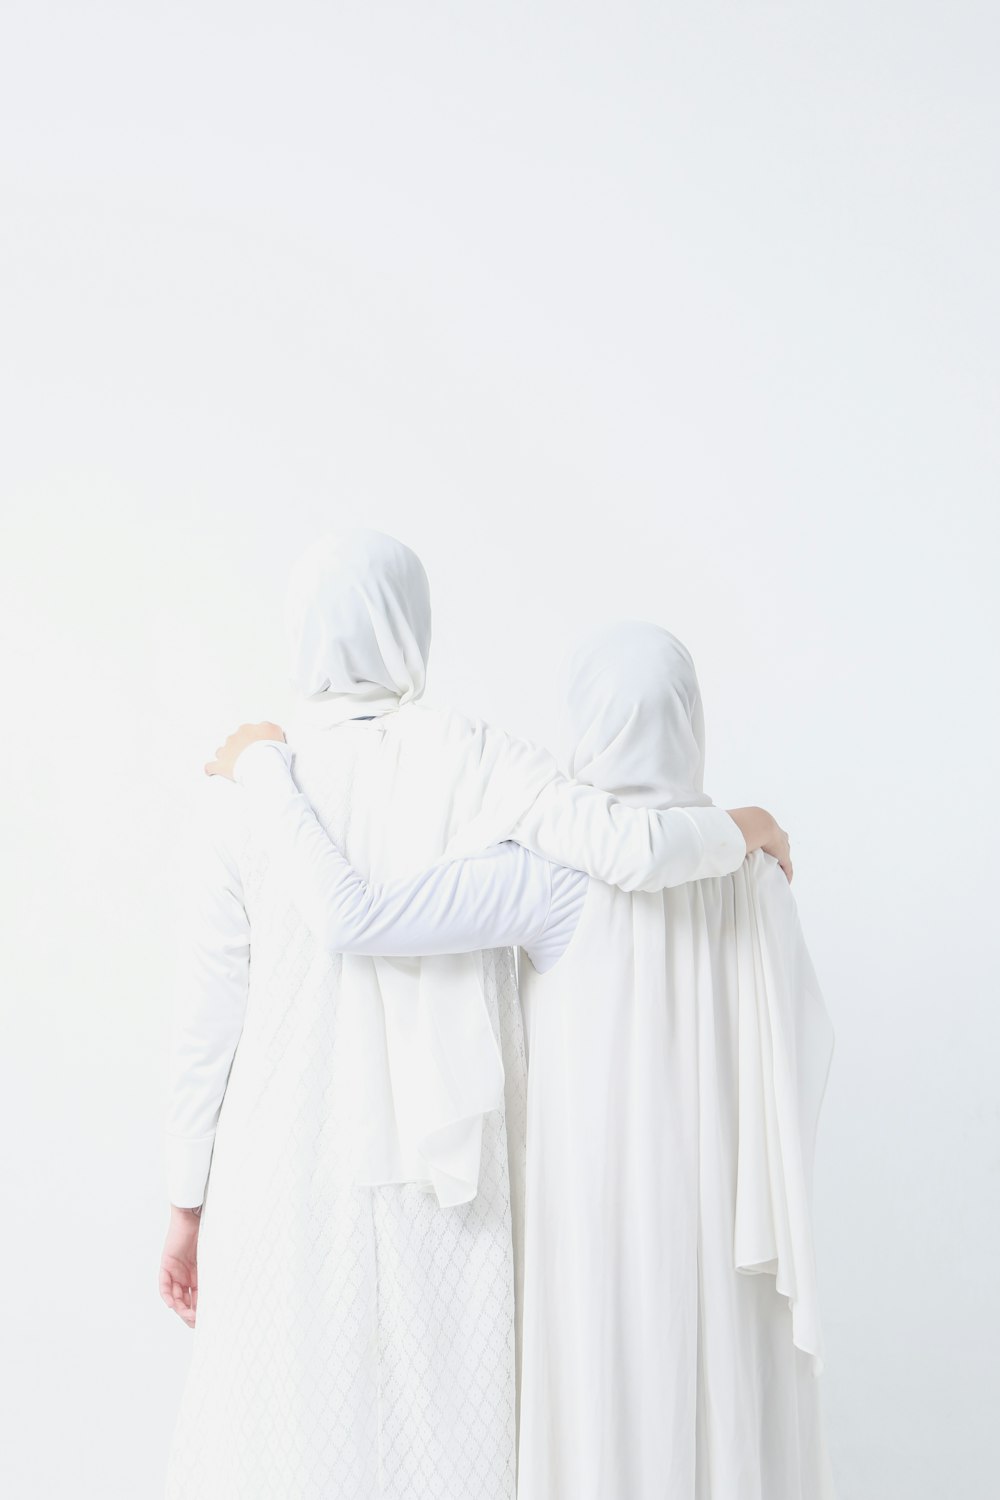 흰 옷을 입은 두 여자가 나란히 서 있다